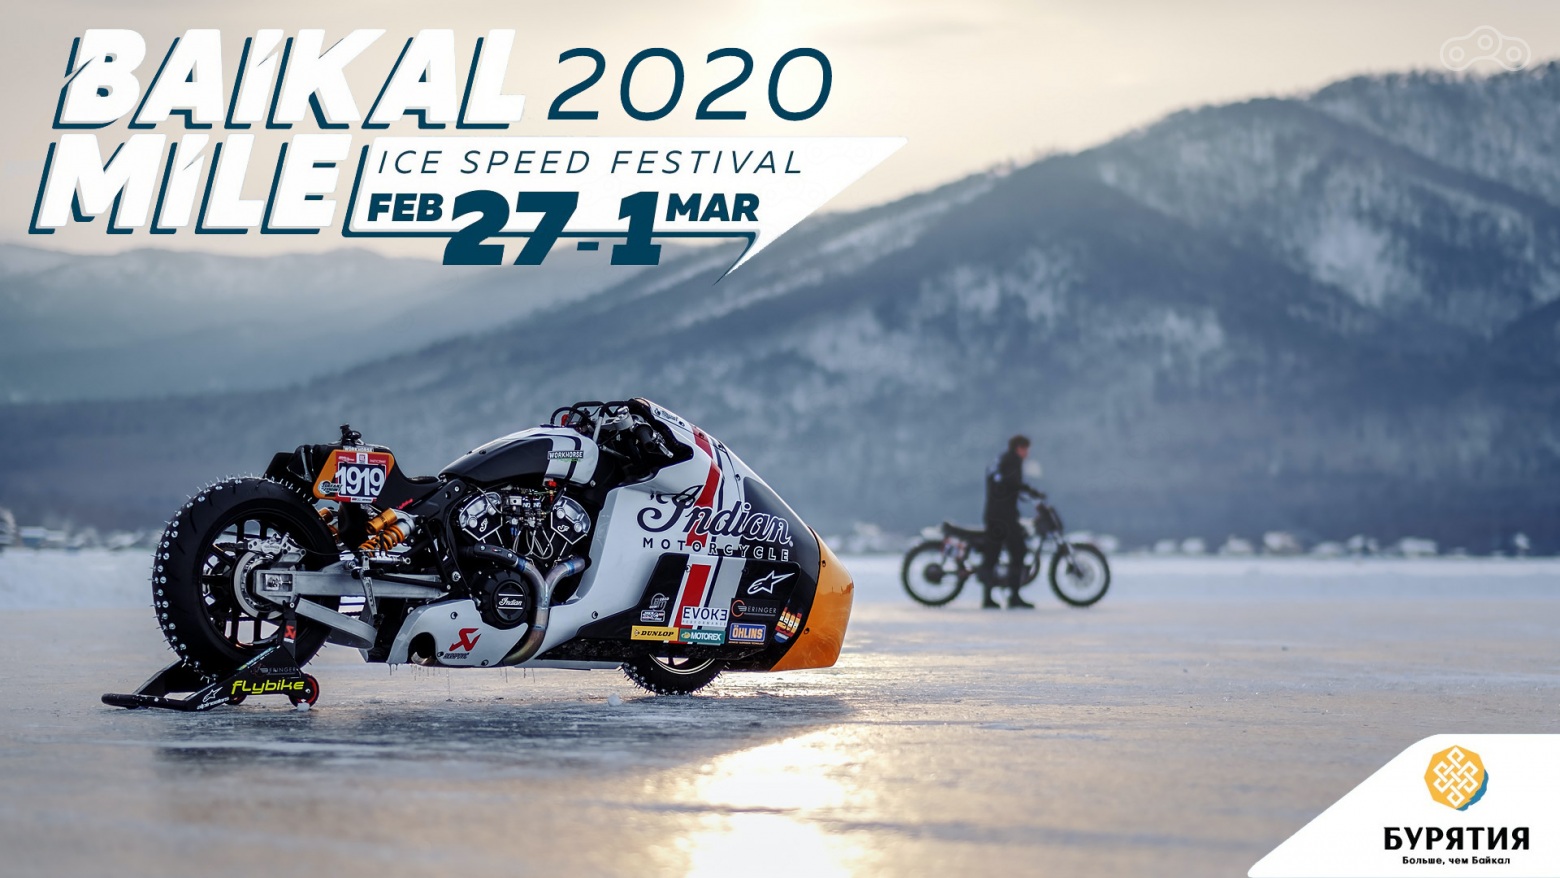 Байкальская Миля 2020 - Indian Мотоцикл